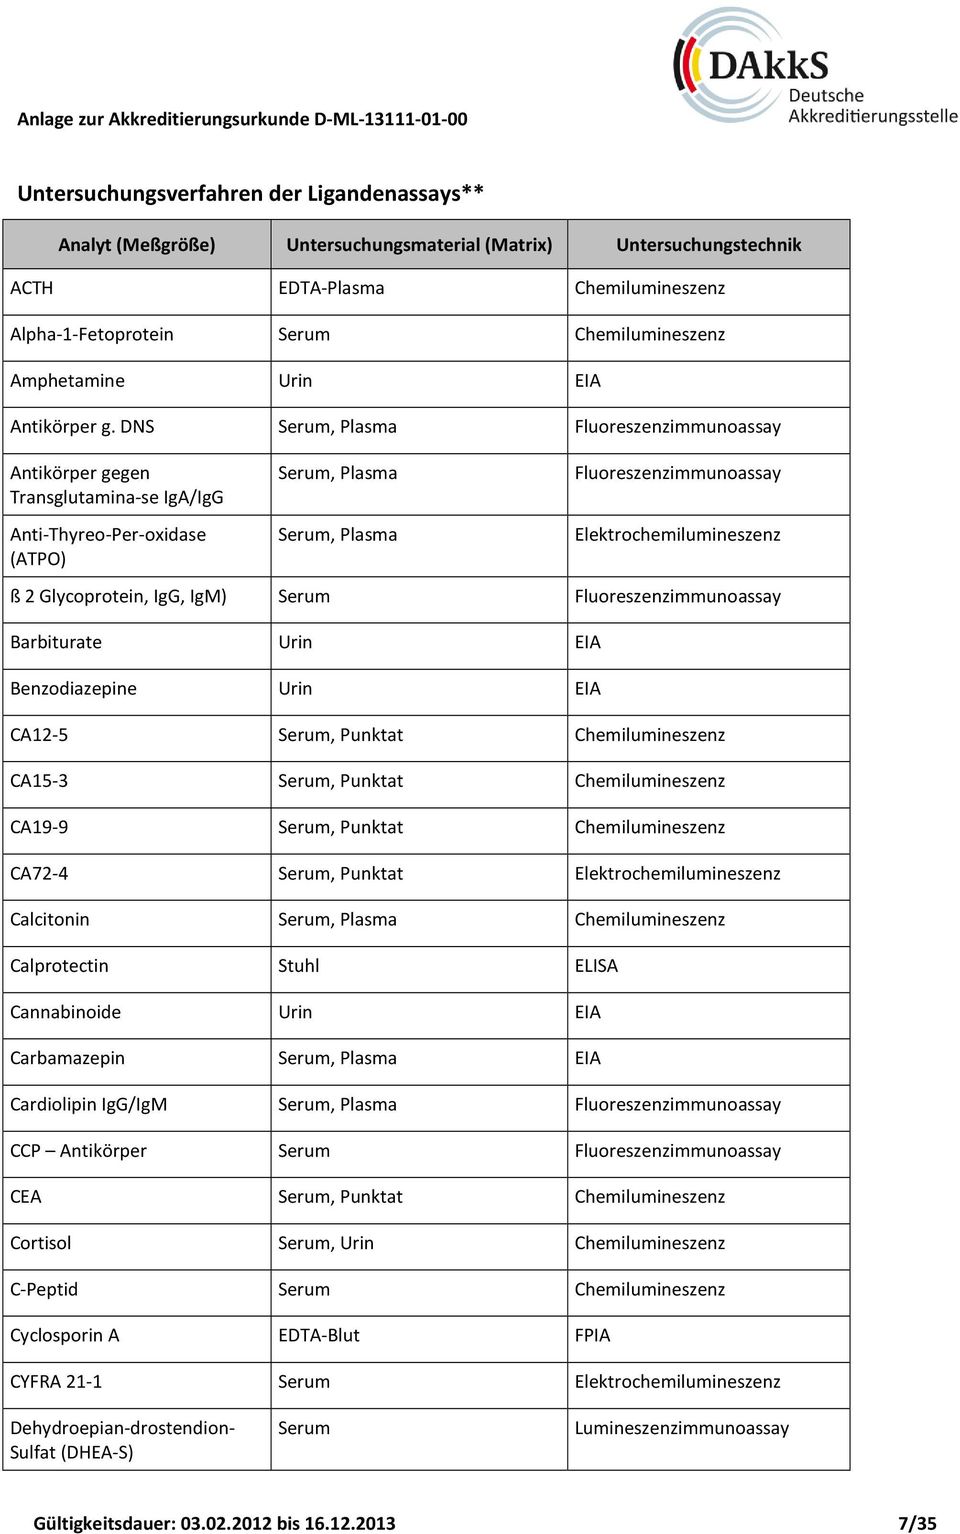 Fluoreszenzimmunoassay Barbiturate Urin EIA Benzodiazepine Urin EIA CA12-5, Punktat Chemilumineszenz CA15-3, Punktat Chemilumineszenz CA19-9, Punktat Chemilumineszenz CA72-4, Punktat